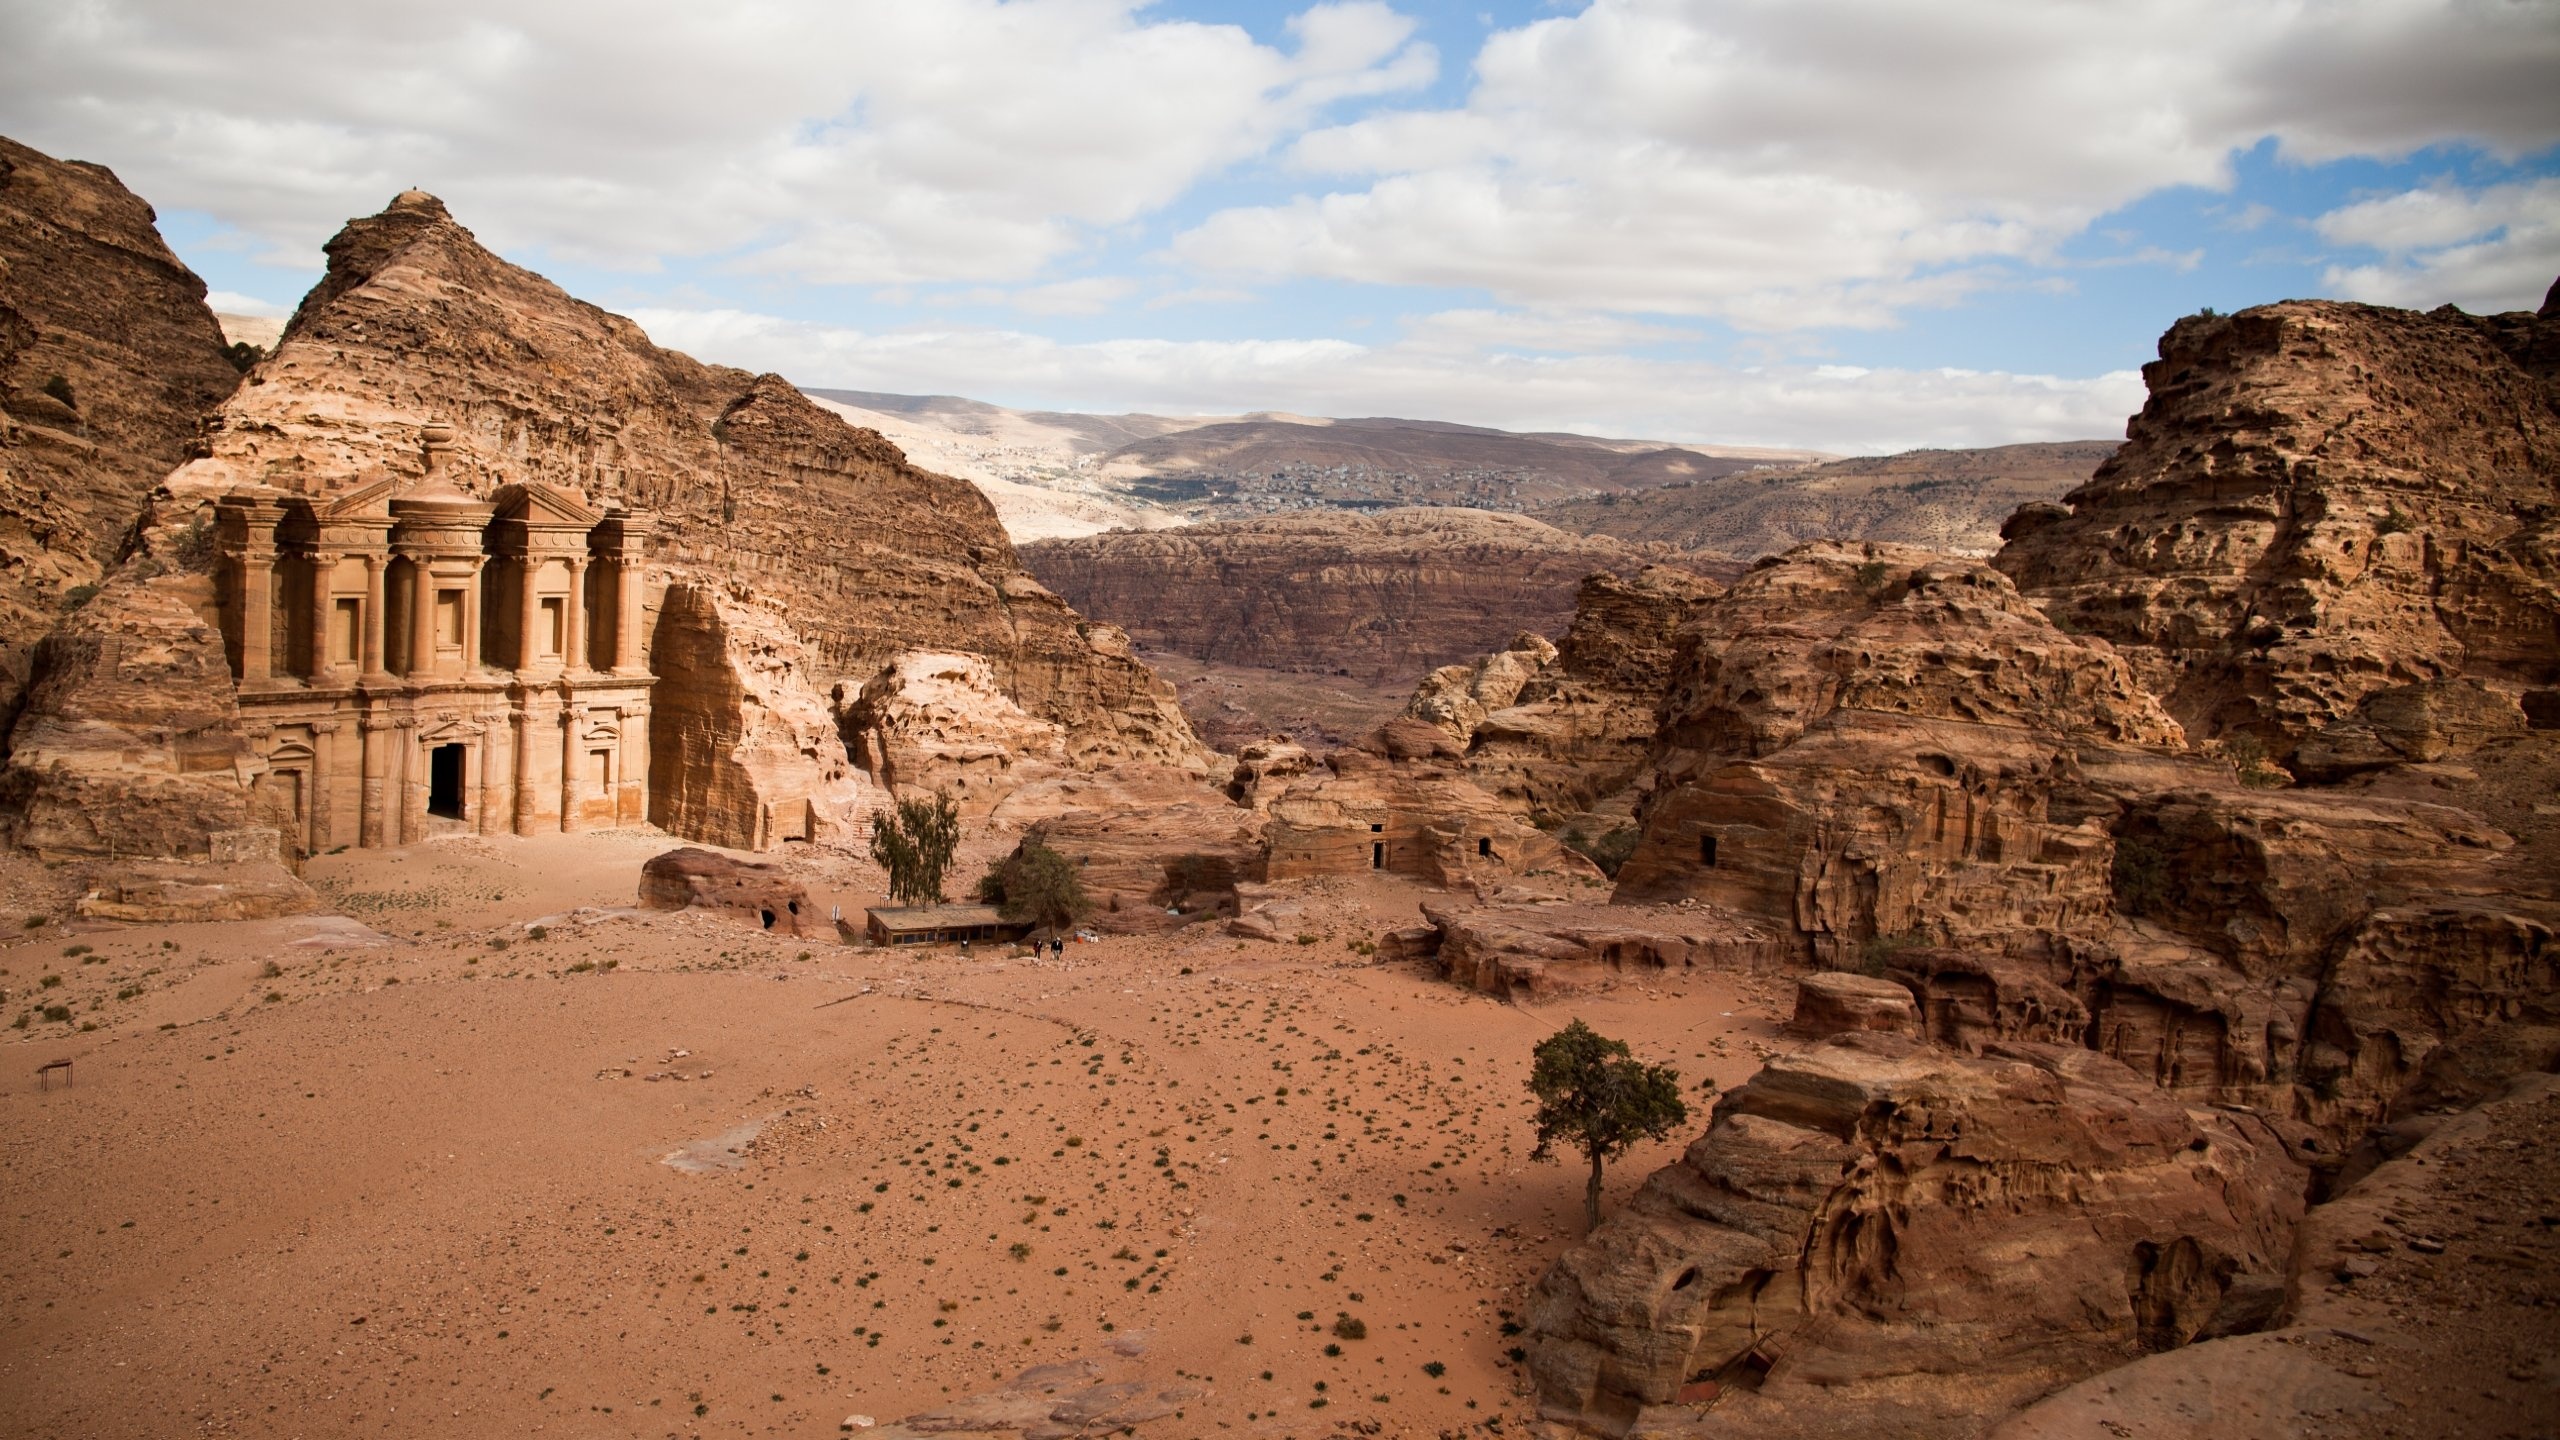 Petra, Breathtaking scenery, Jordan landmarks, Travel backgrounds, 2560x1440 HD Desktop